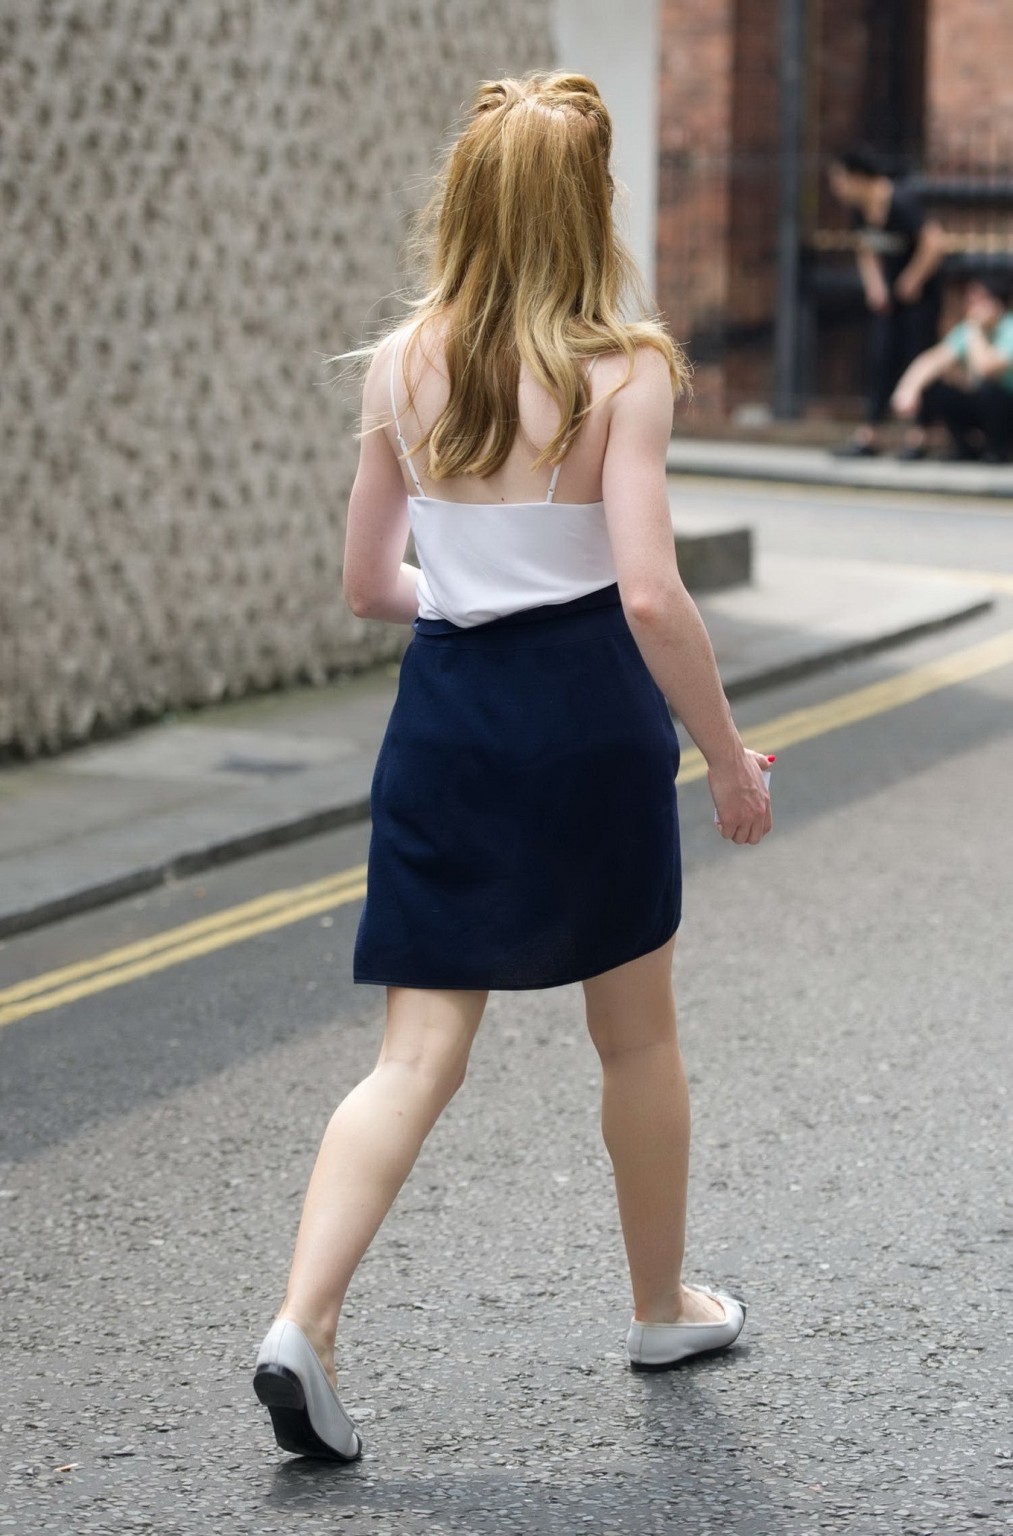 Nicola roberts senza reggiseno indossando top bianco trasparente e mini gonna blu fuori a Londra
 #75224187